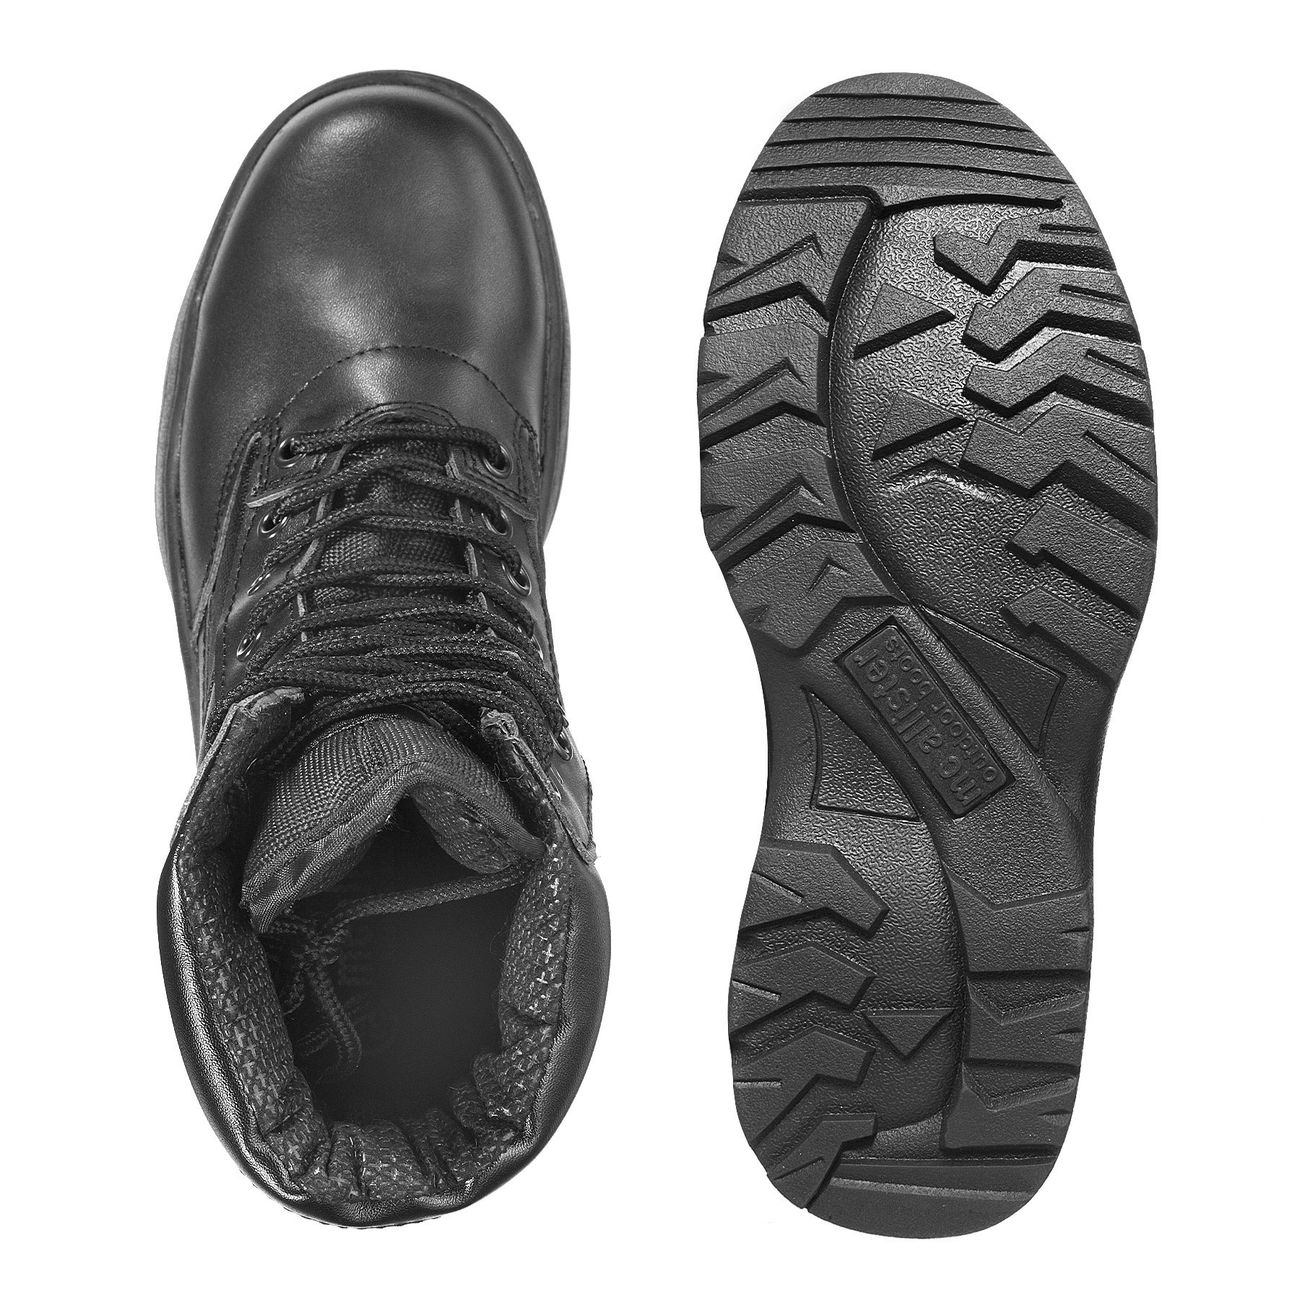 McAllister Outdoor Boots Stiefel schwarz Bild 1